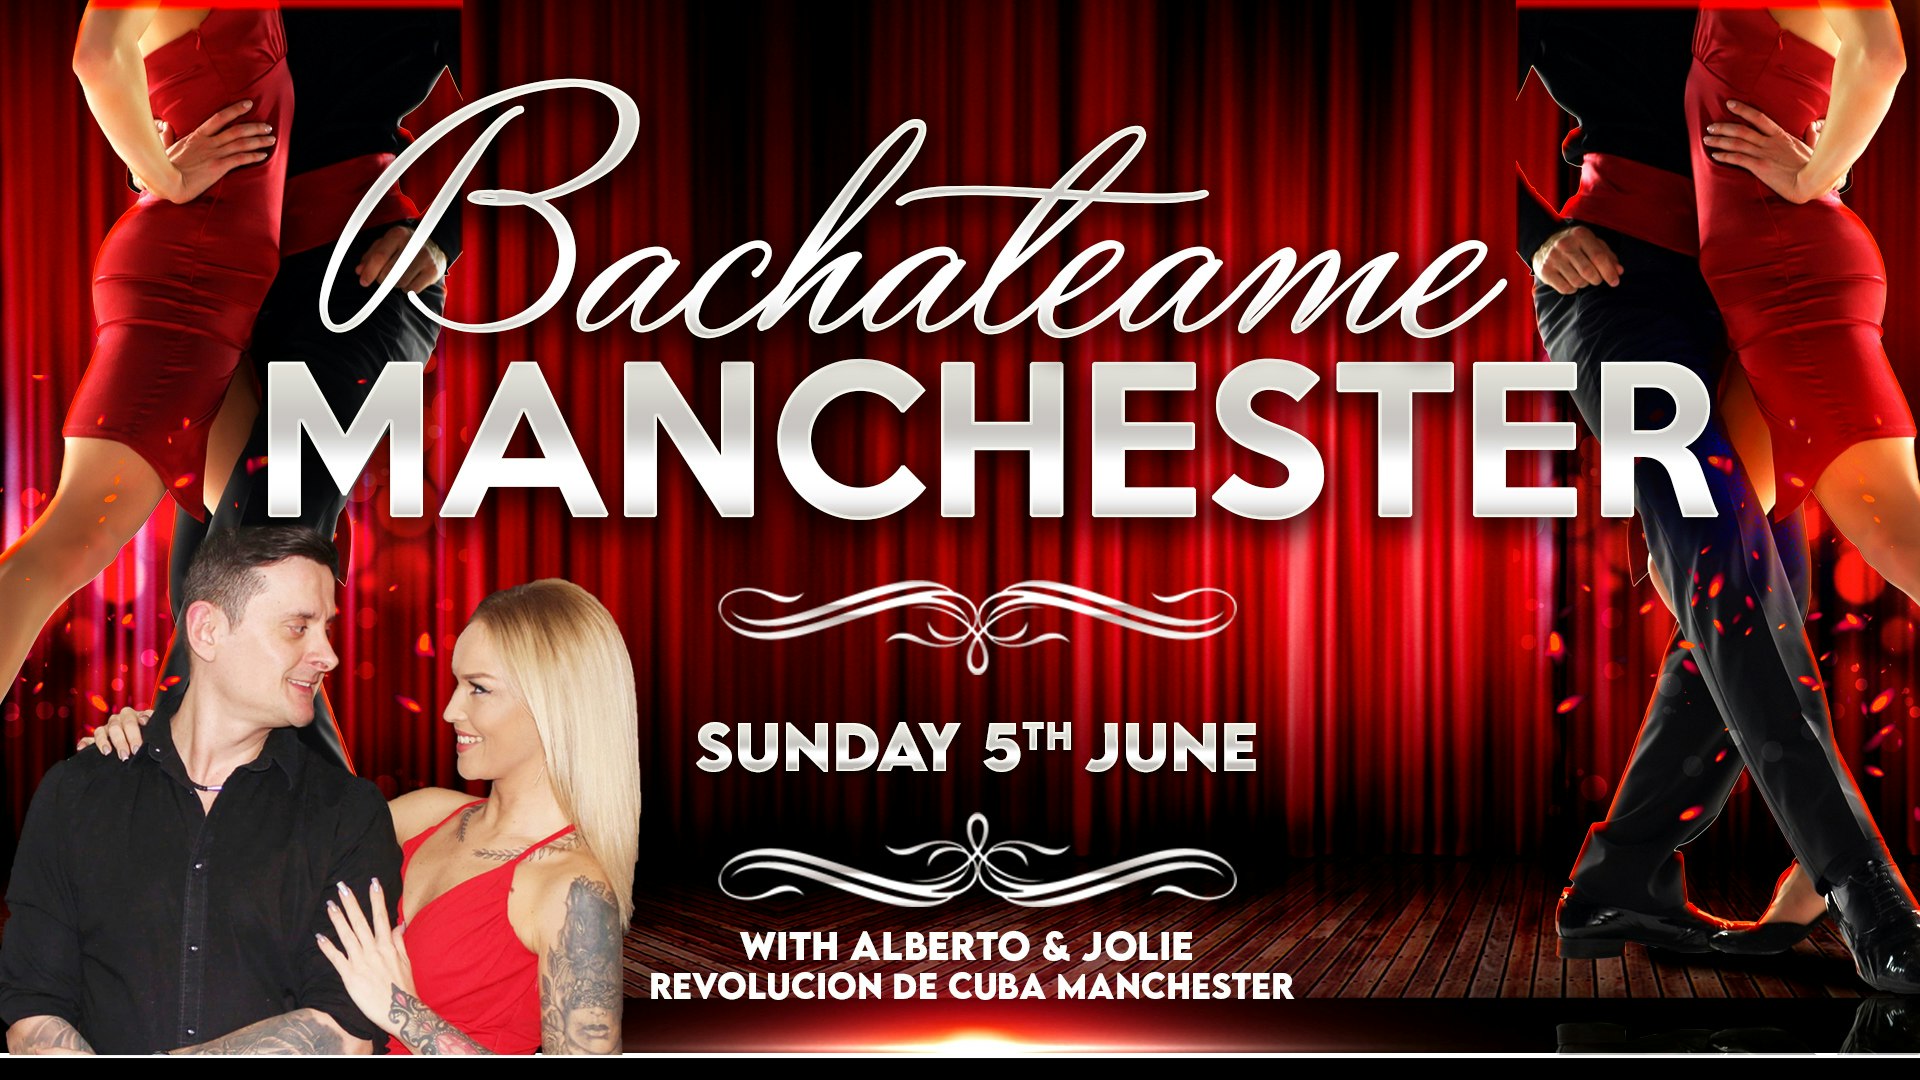 Bachateame Manchester – Sunday 5th June with Alberto & Jolie | Revolucion de Cuba